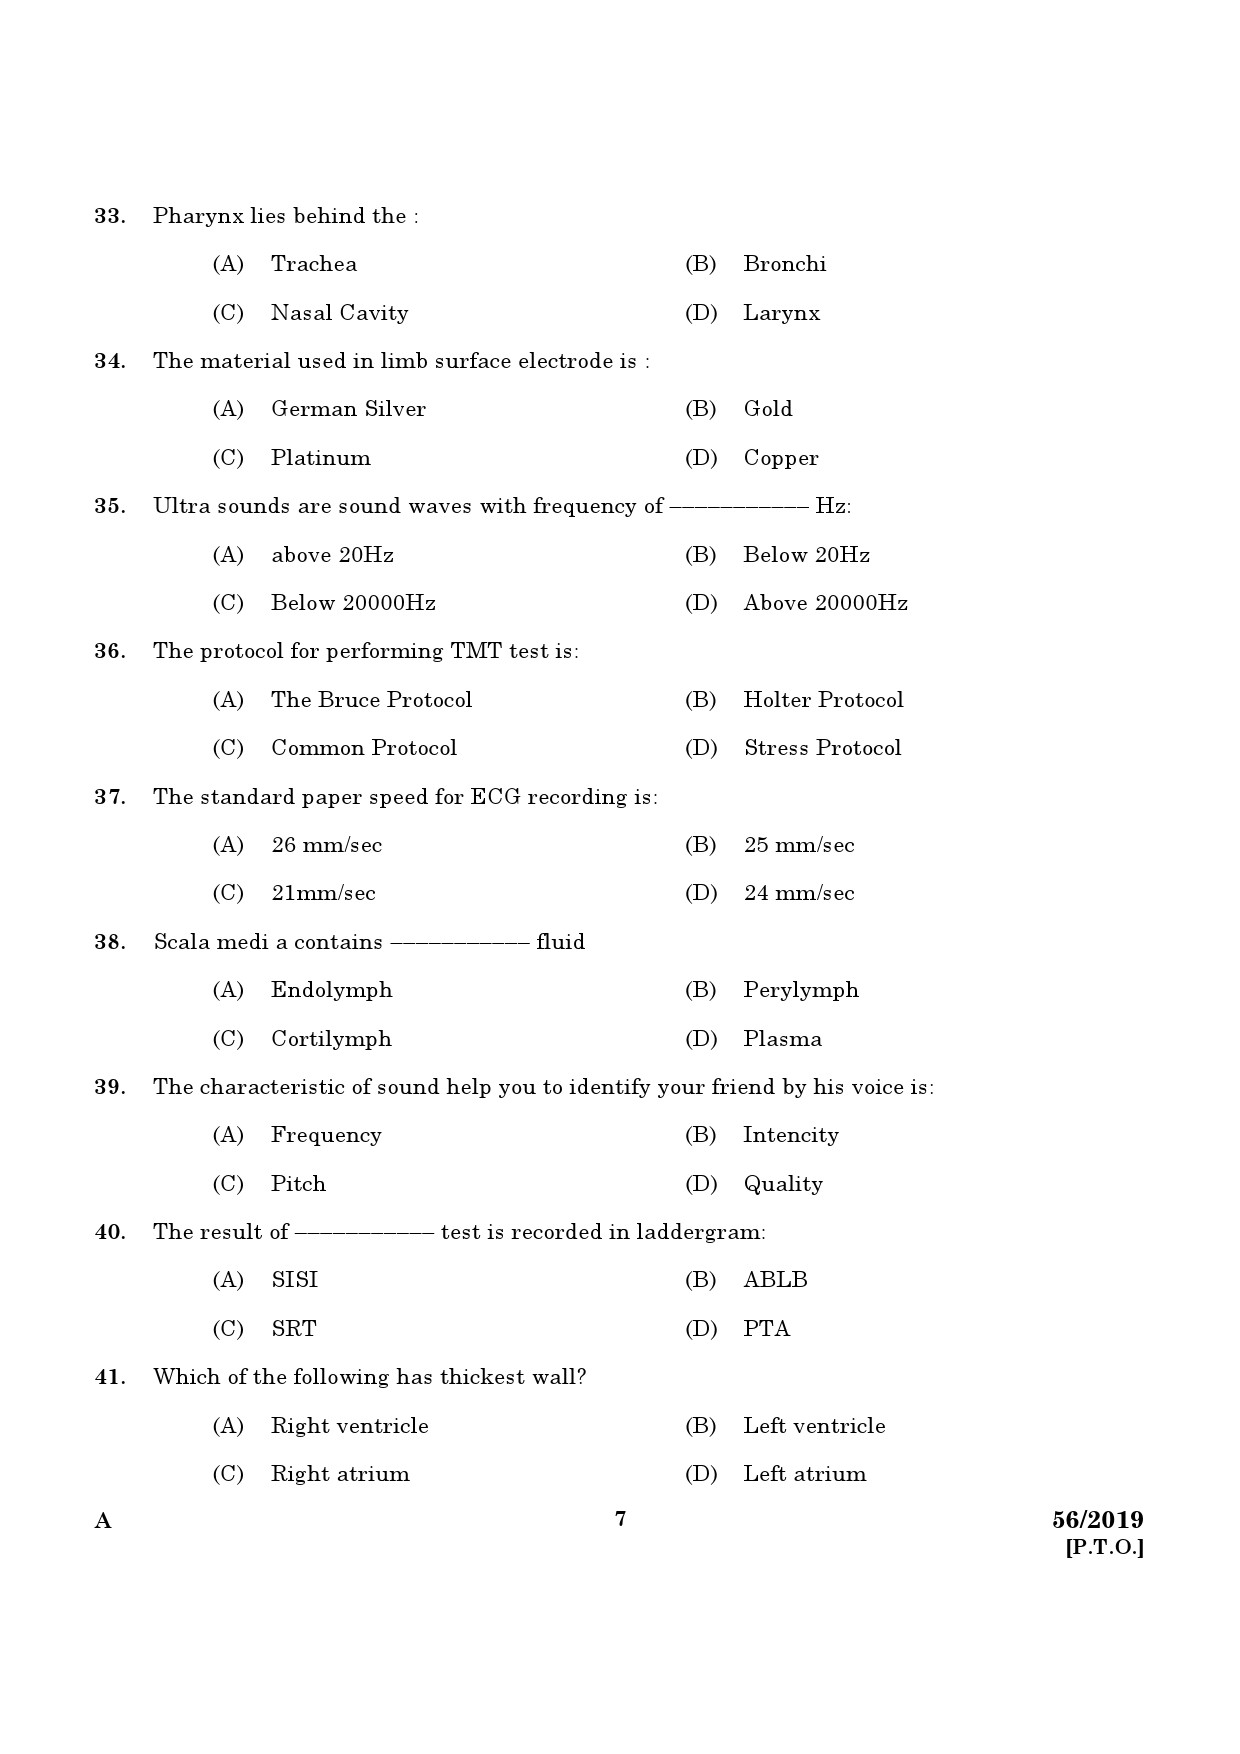 KPSC ECG Technician Grade II Exam Question Paper 0562019 5